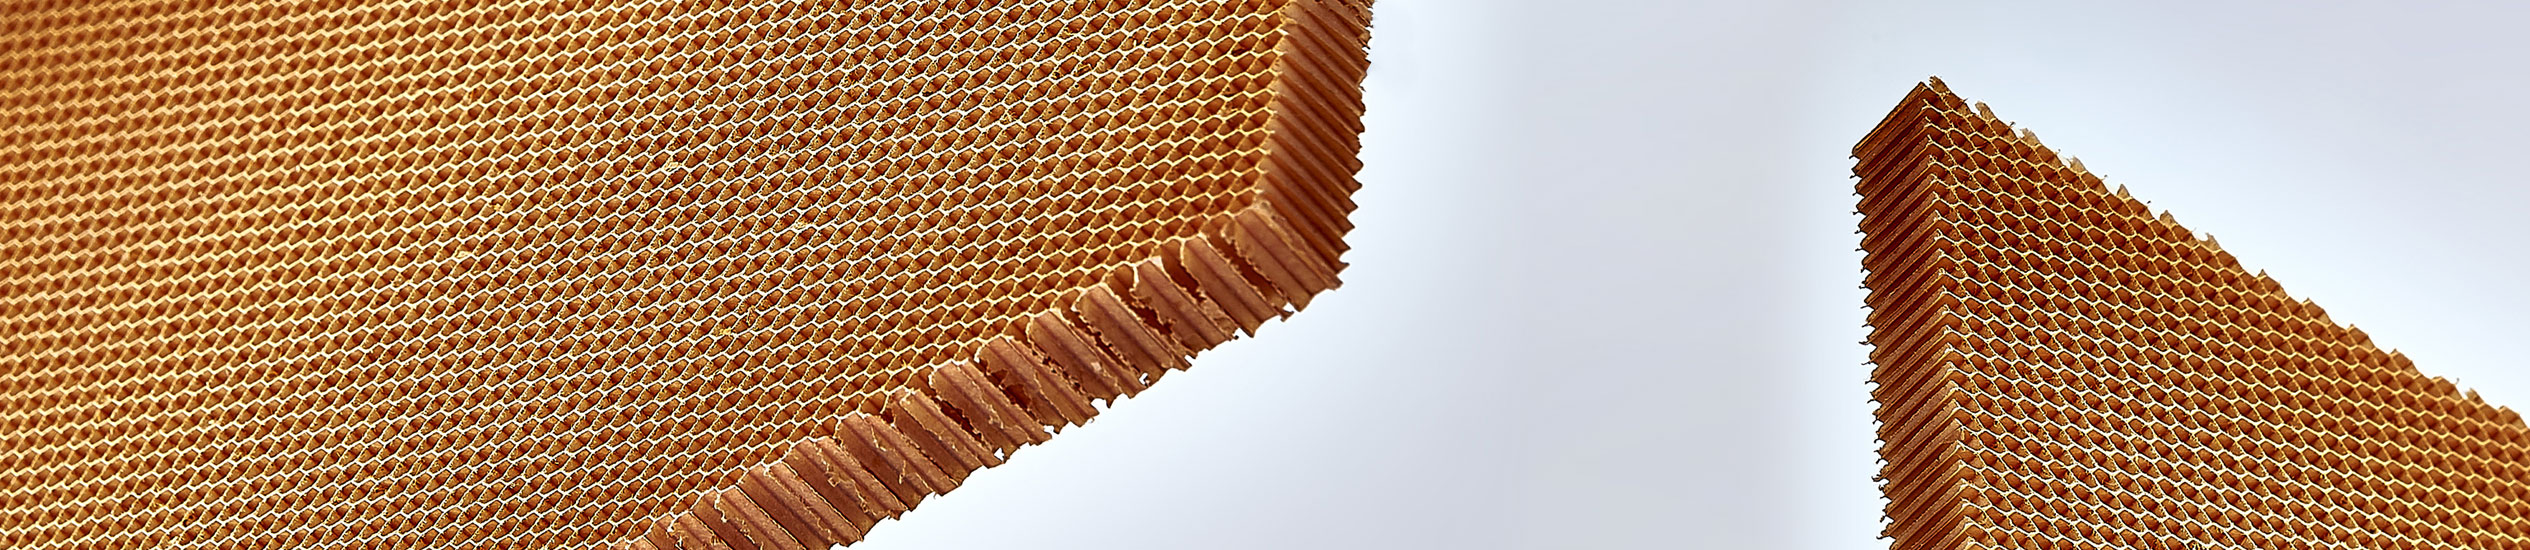 Il nido d'ape in Nomex® è un prodotto non metallico, leggero e resistente realizzato con carta aramidica. È usato nel settore navale, ferroviario e aeronautico.